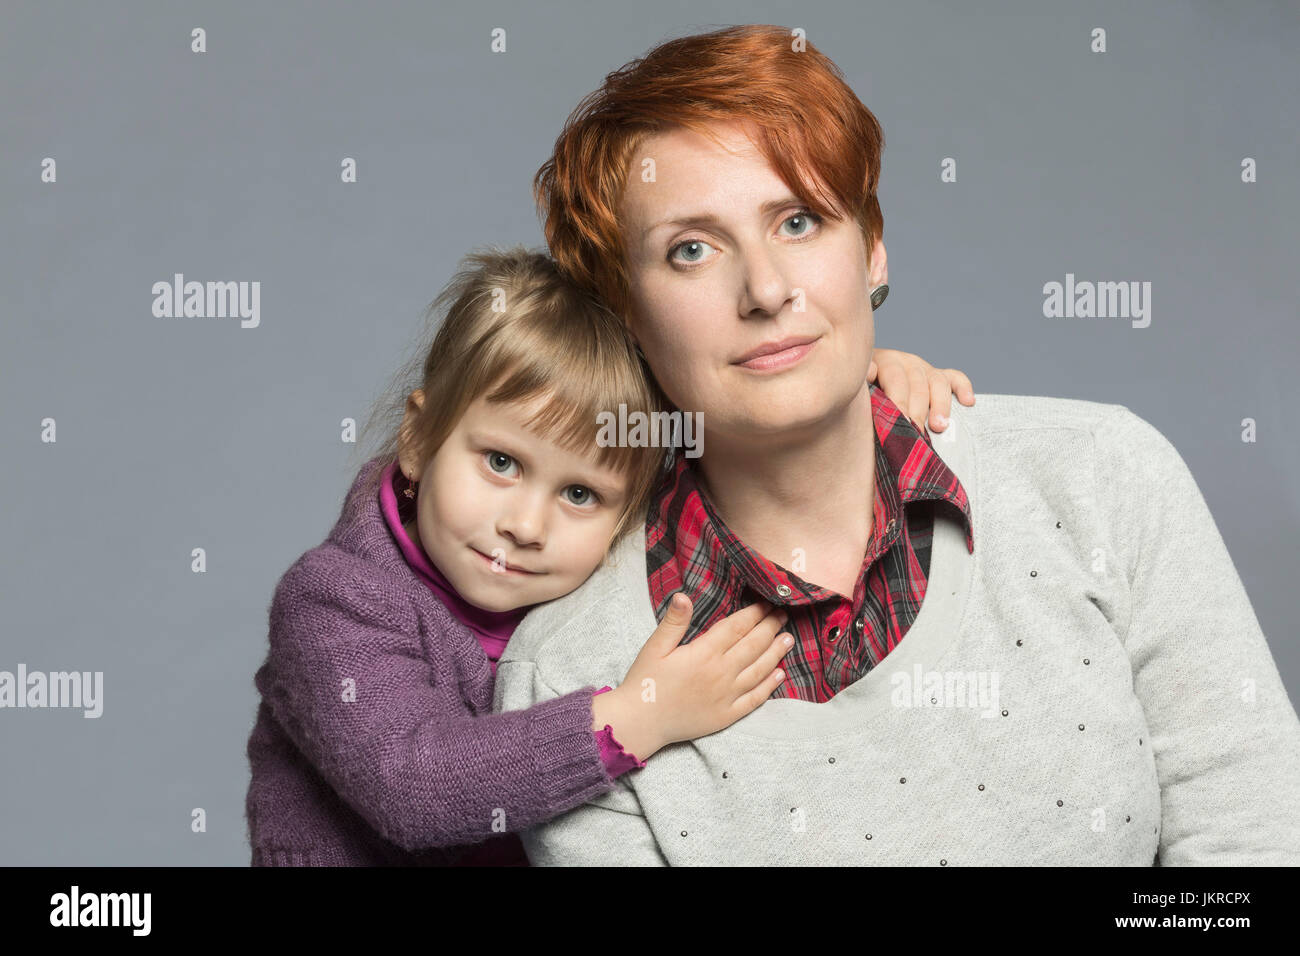 Ritratto della figlia abbracciando la madre contro lo sfondo grigio Foto Stock